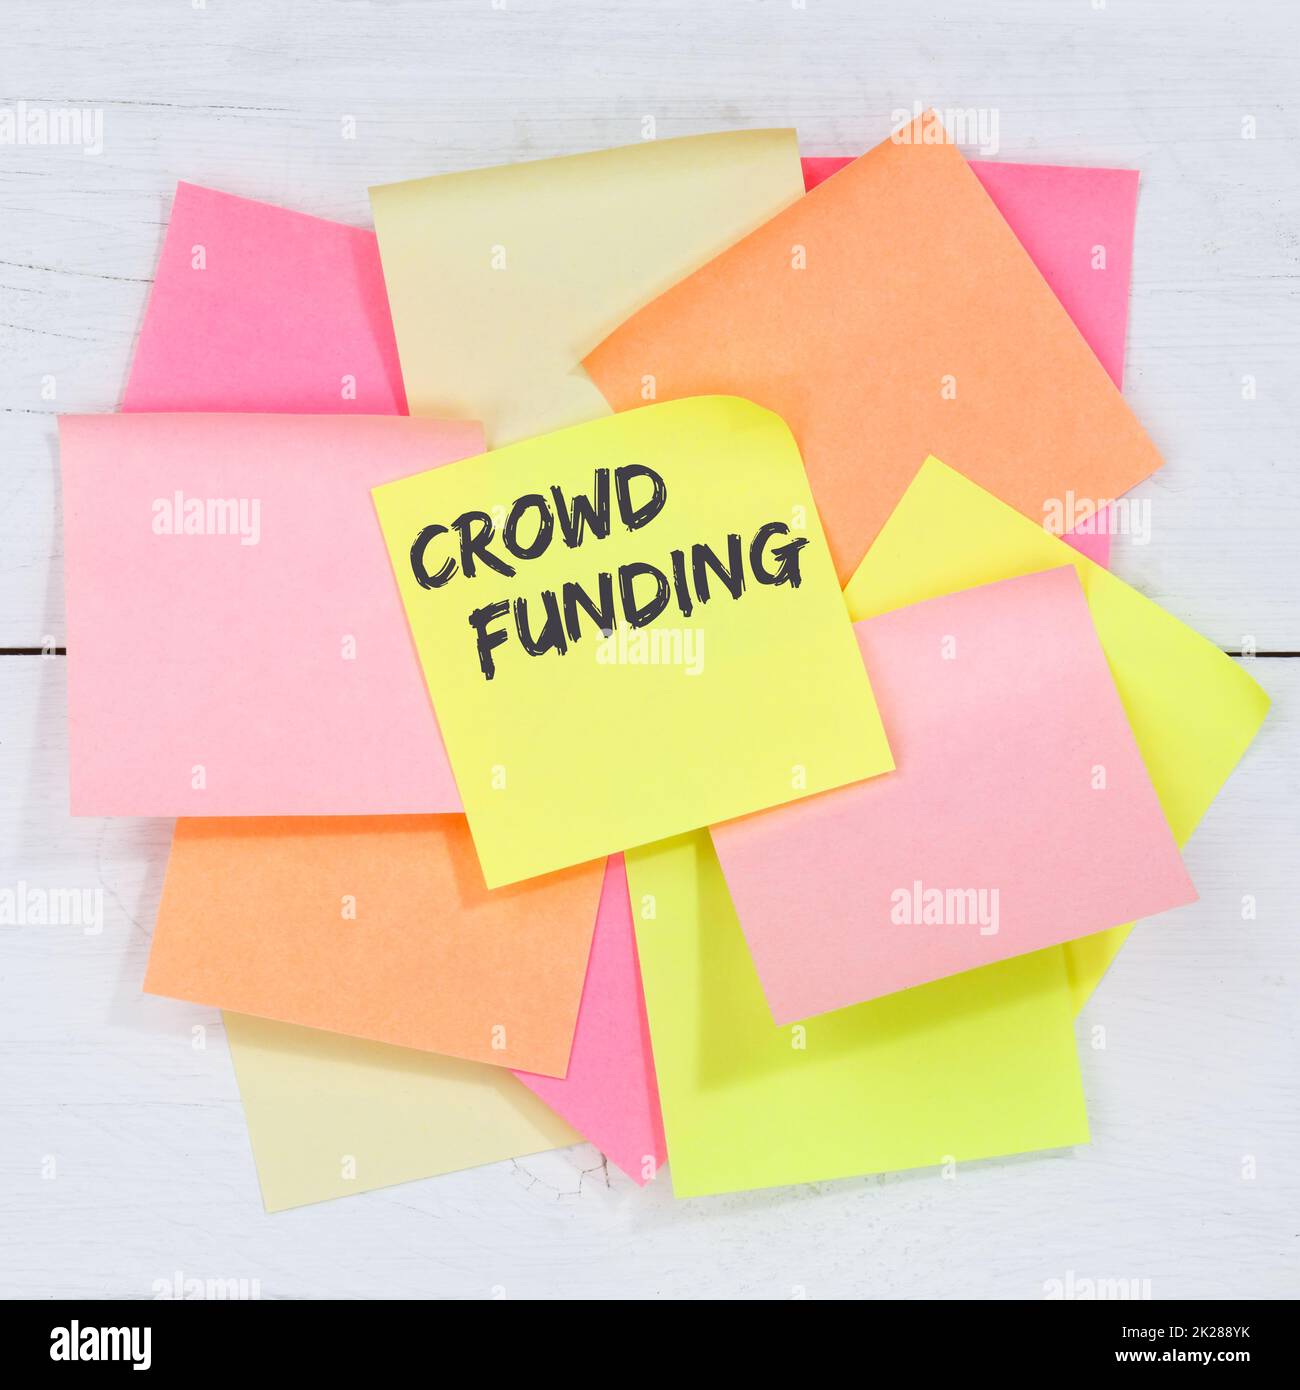 Folla finanziamento crowdfunding raccolta di denaro online investimento internet business concept carta da appunti Foto Stock